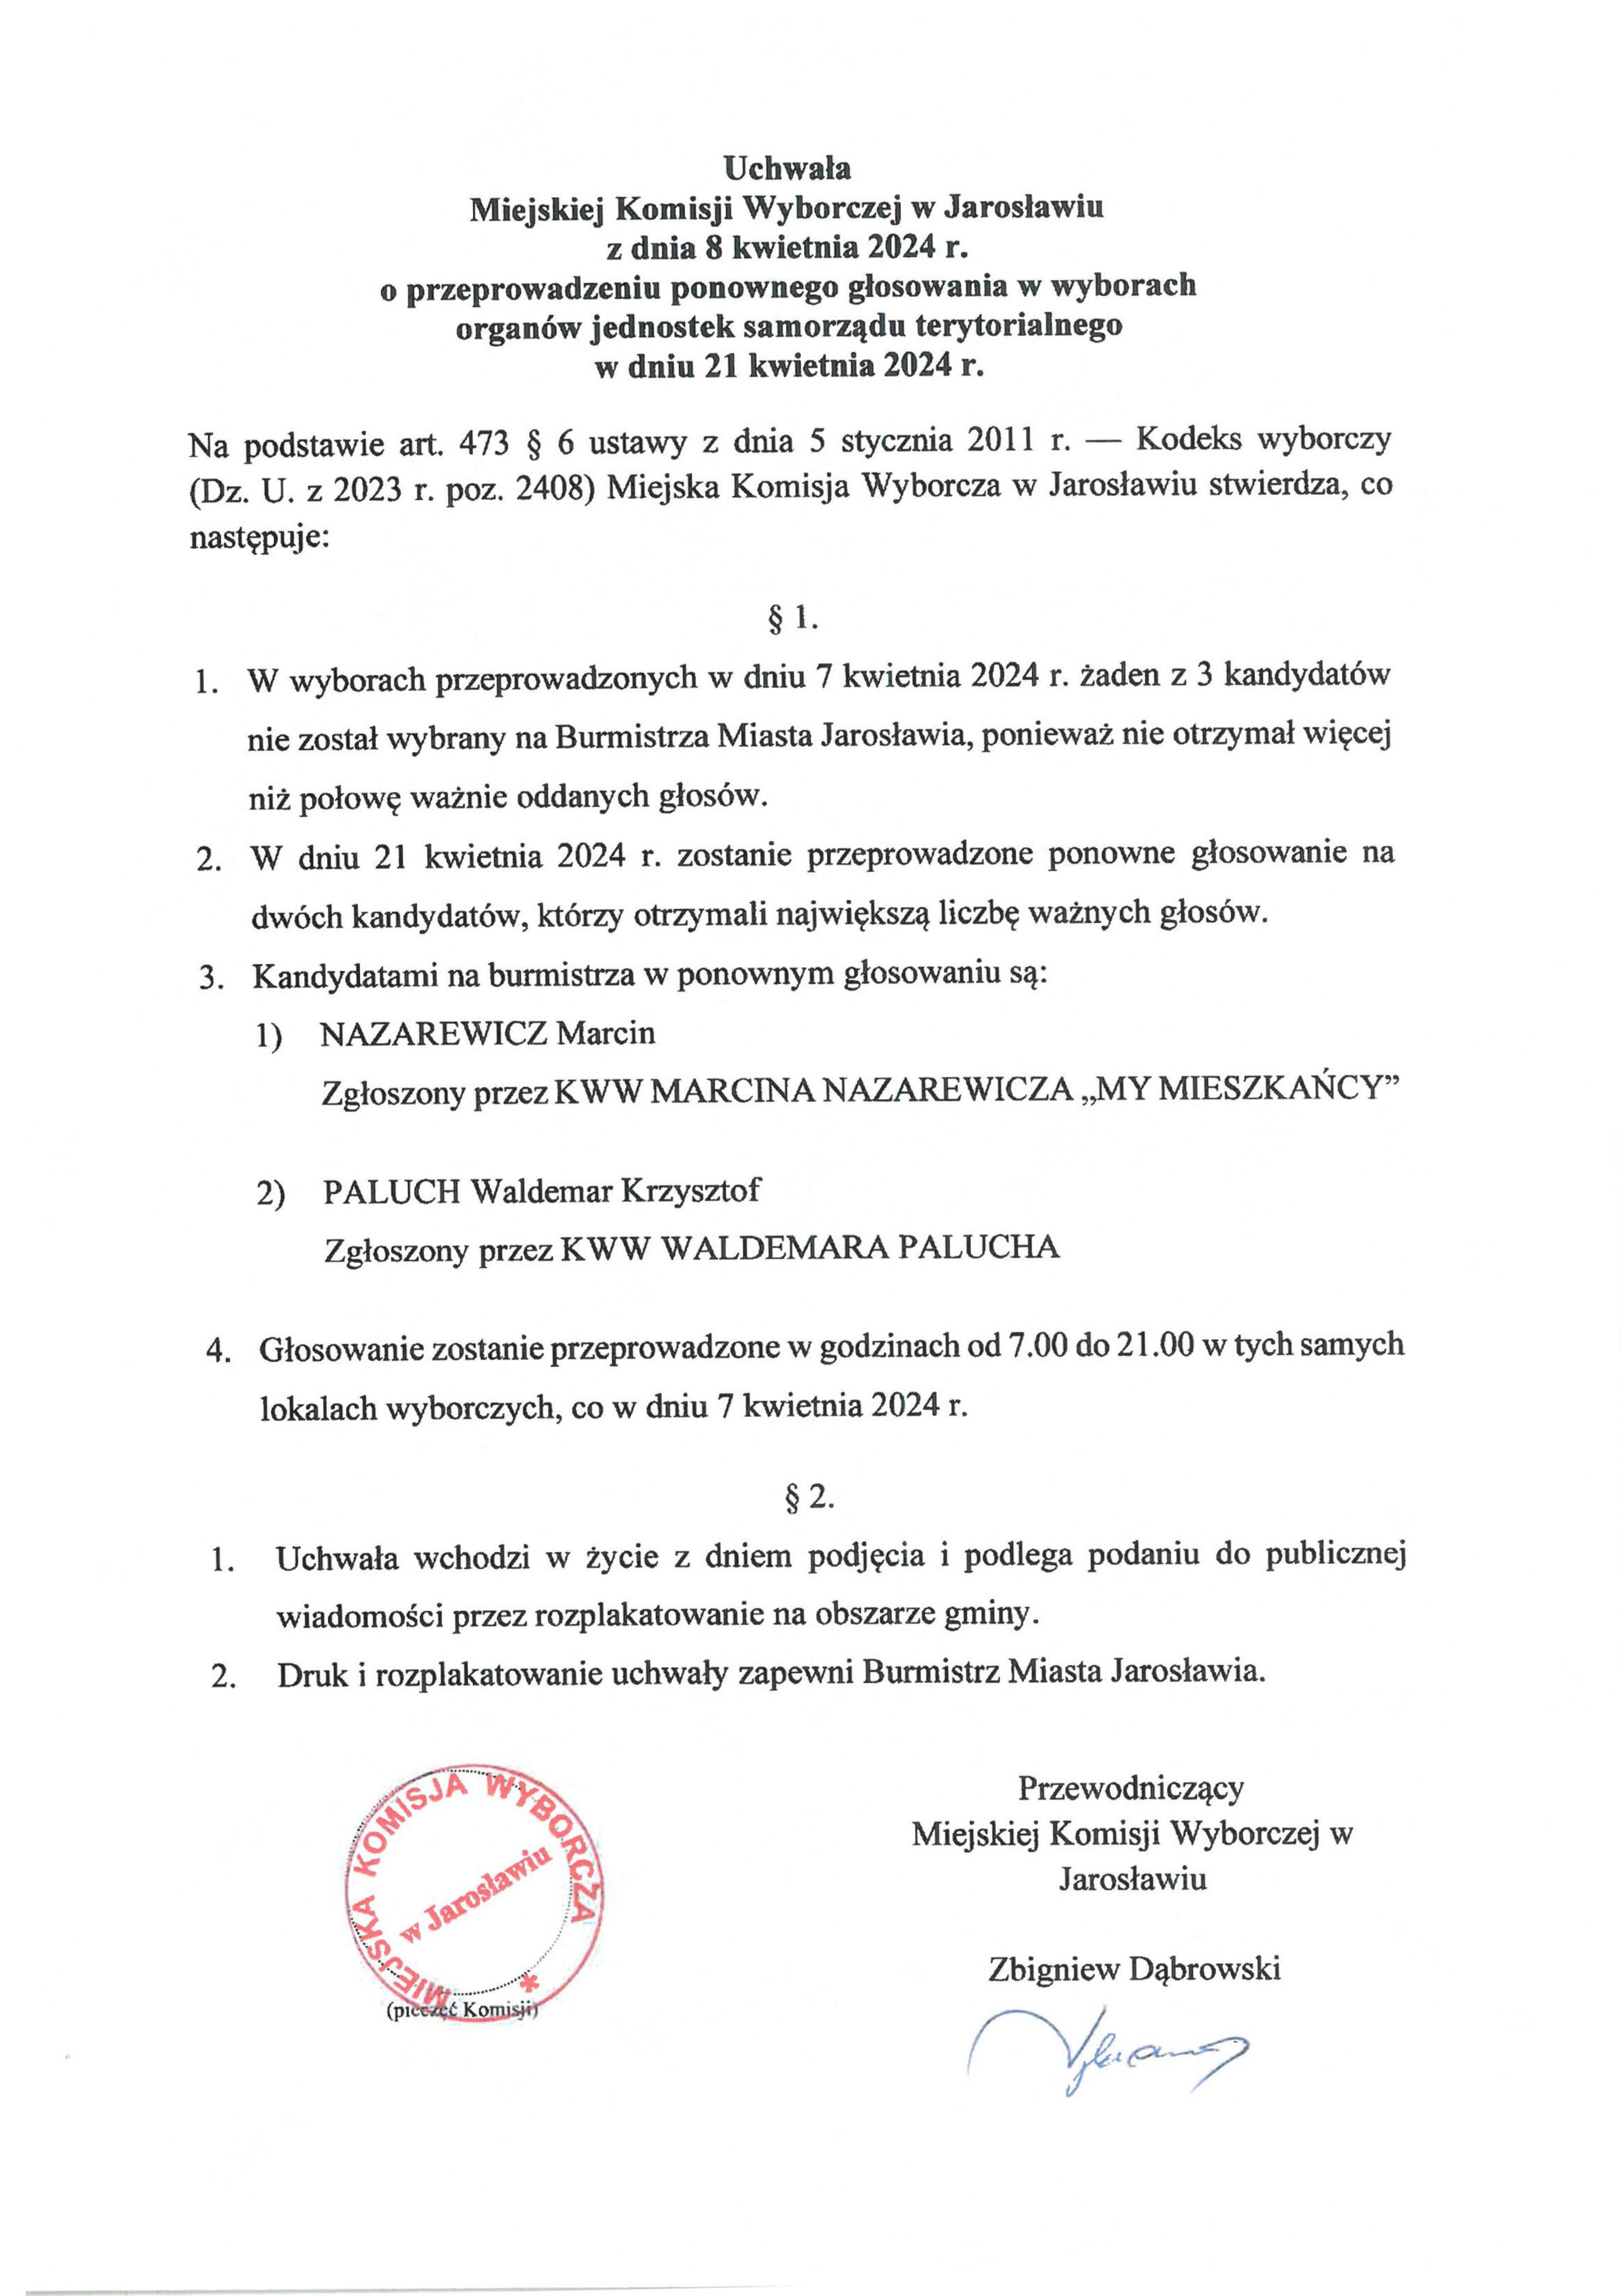 Uchwała Miejskiej Komisji Wyborczej w Jarosławiu z dnia 8 kwietnia 2024 r. o przeprowadzeniu ponownego głosowania w wyborach organów jednostek samorządu terytorialnego w dniu 21 kwietnia 2024 roku